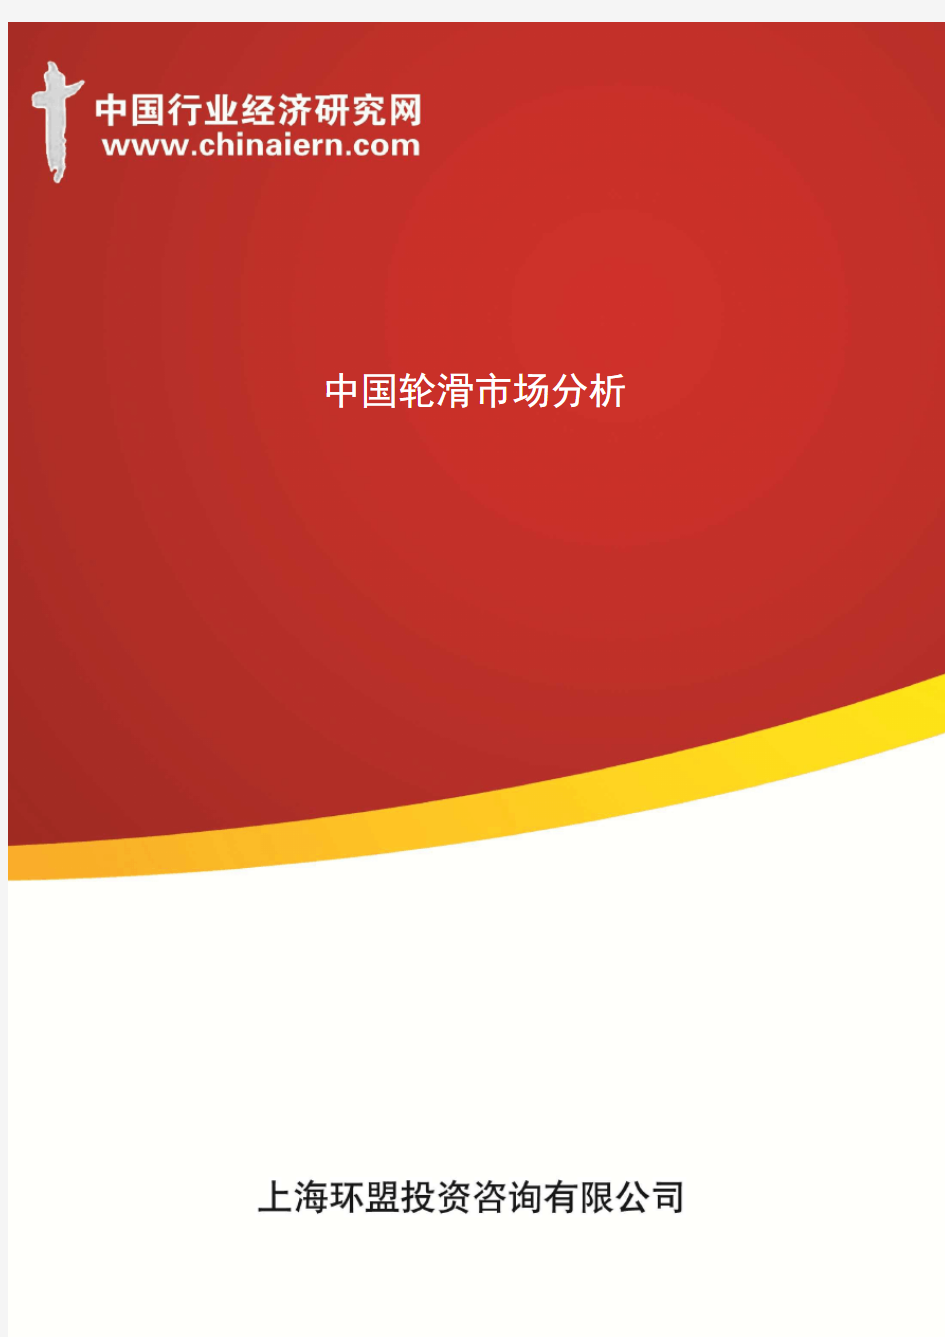 中国轮滑市场分析(上海环盟)